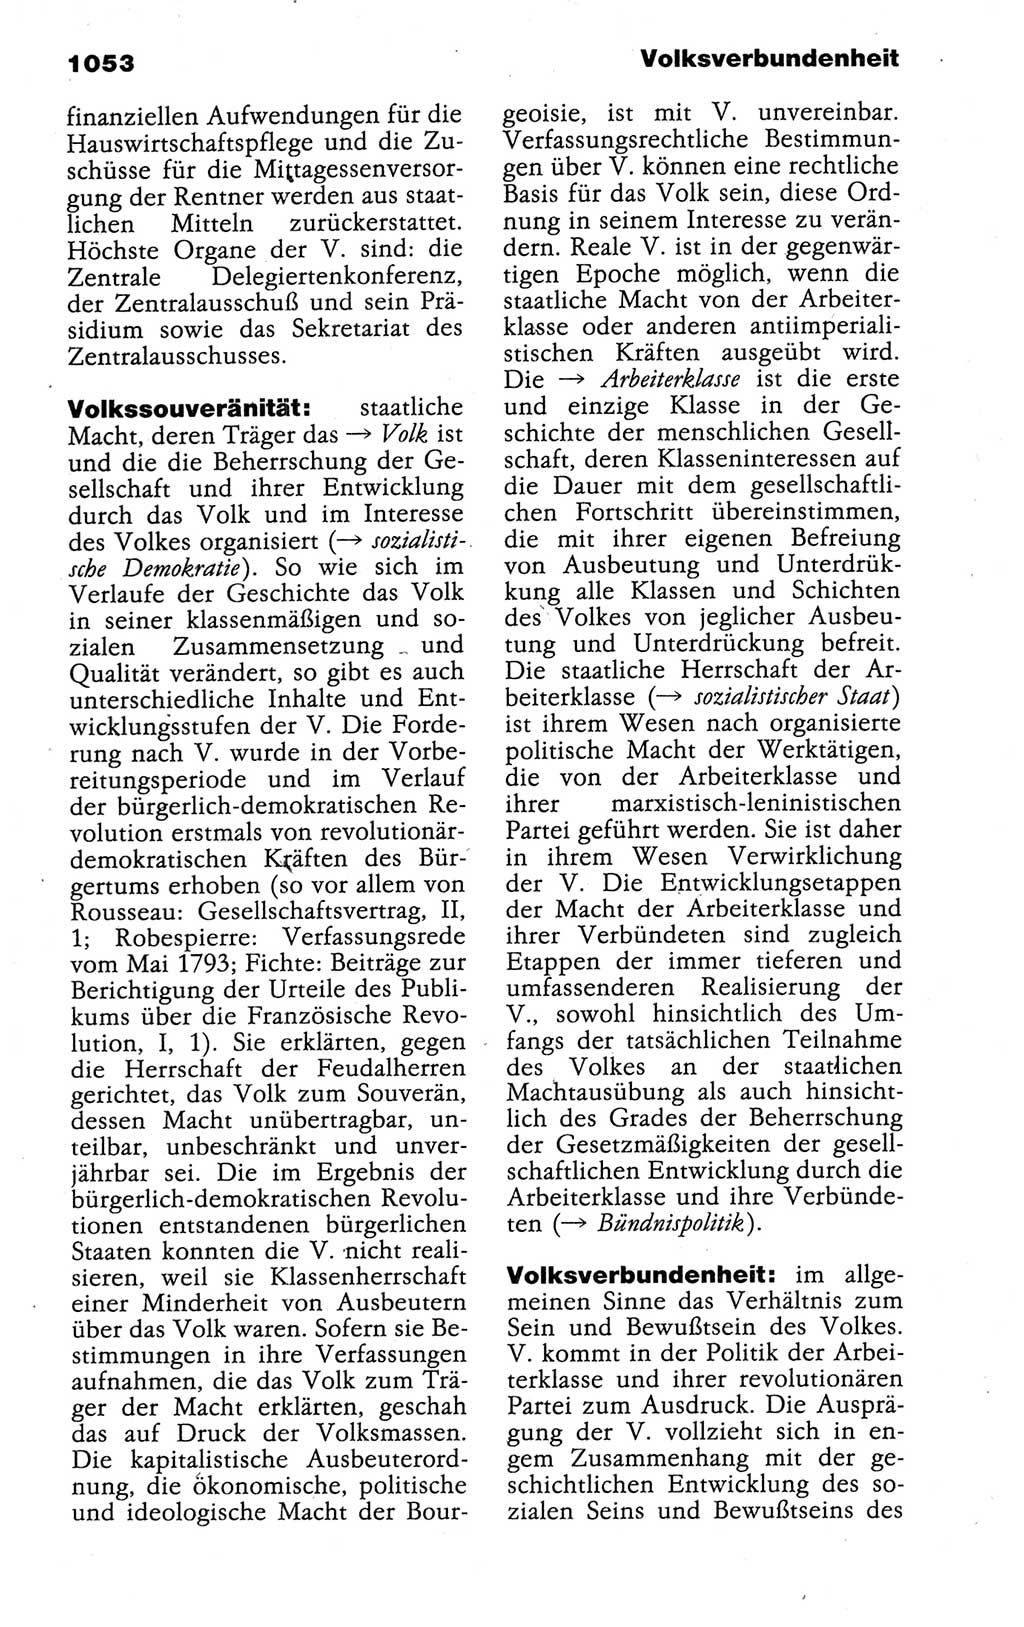 Kleines politisches Wörterbuch [Deutsche Demokratische Republik (DDR)] 1988, Seite 1053 (Kl. pol. Wb. DDR 1988, S. 1053)